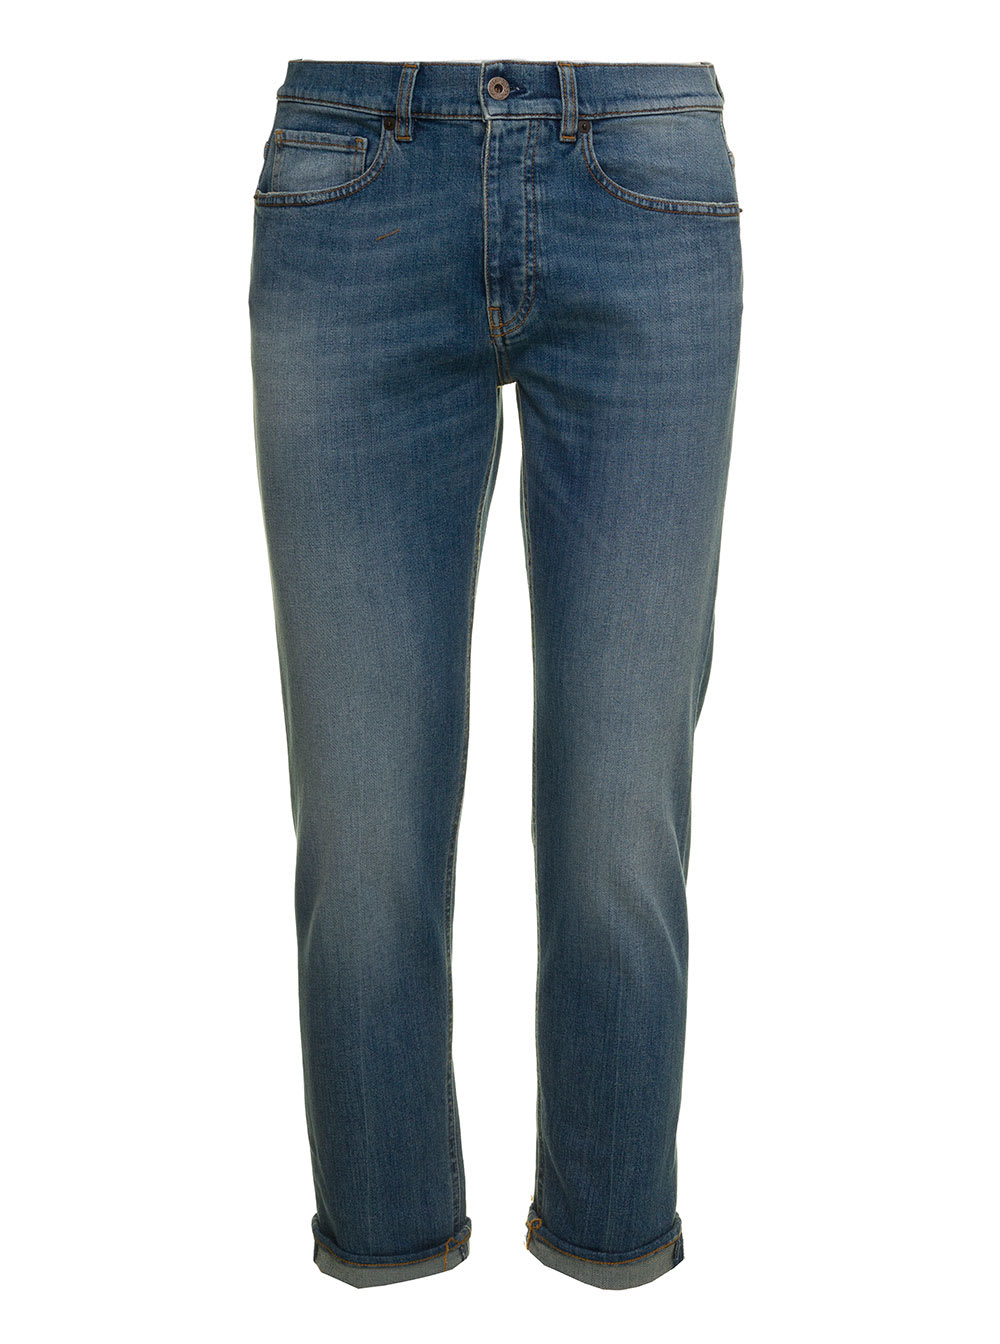 Pence 1979 Mans Five Pocket Blue Denim Jeans